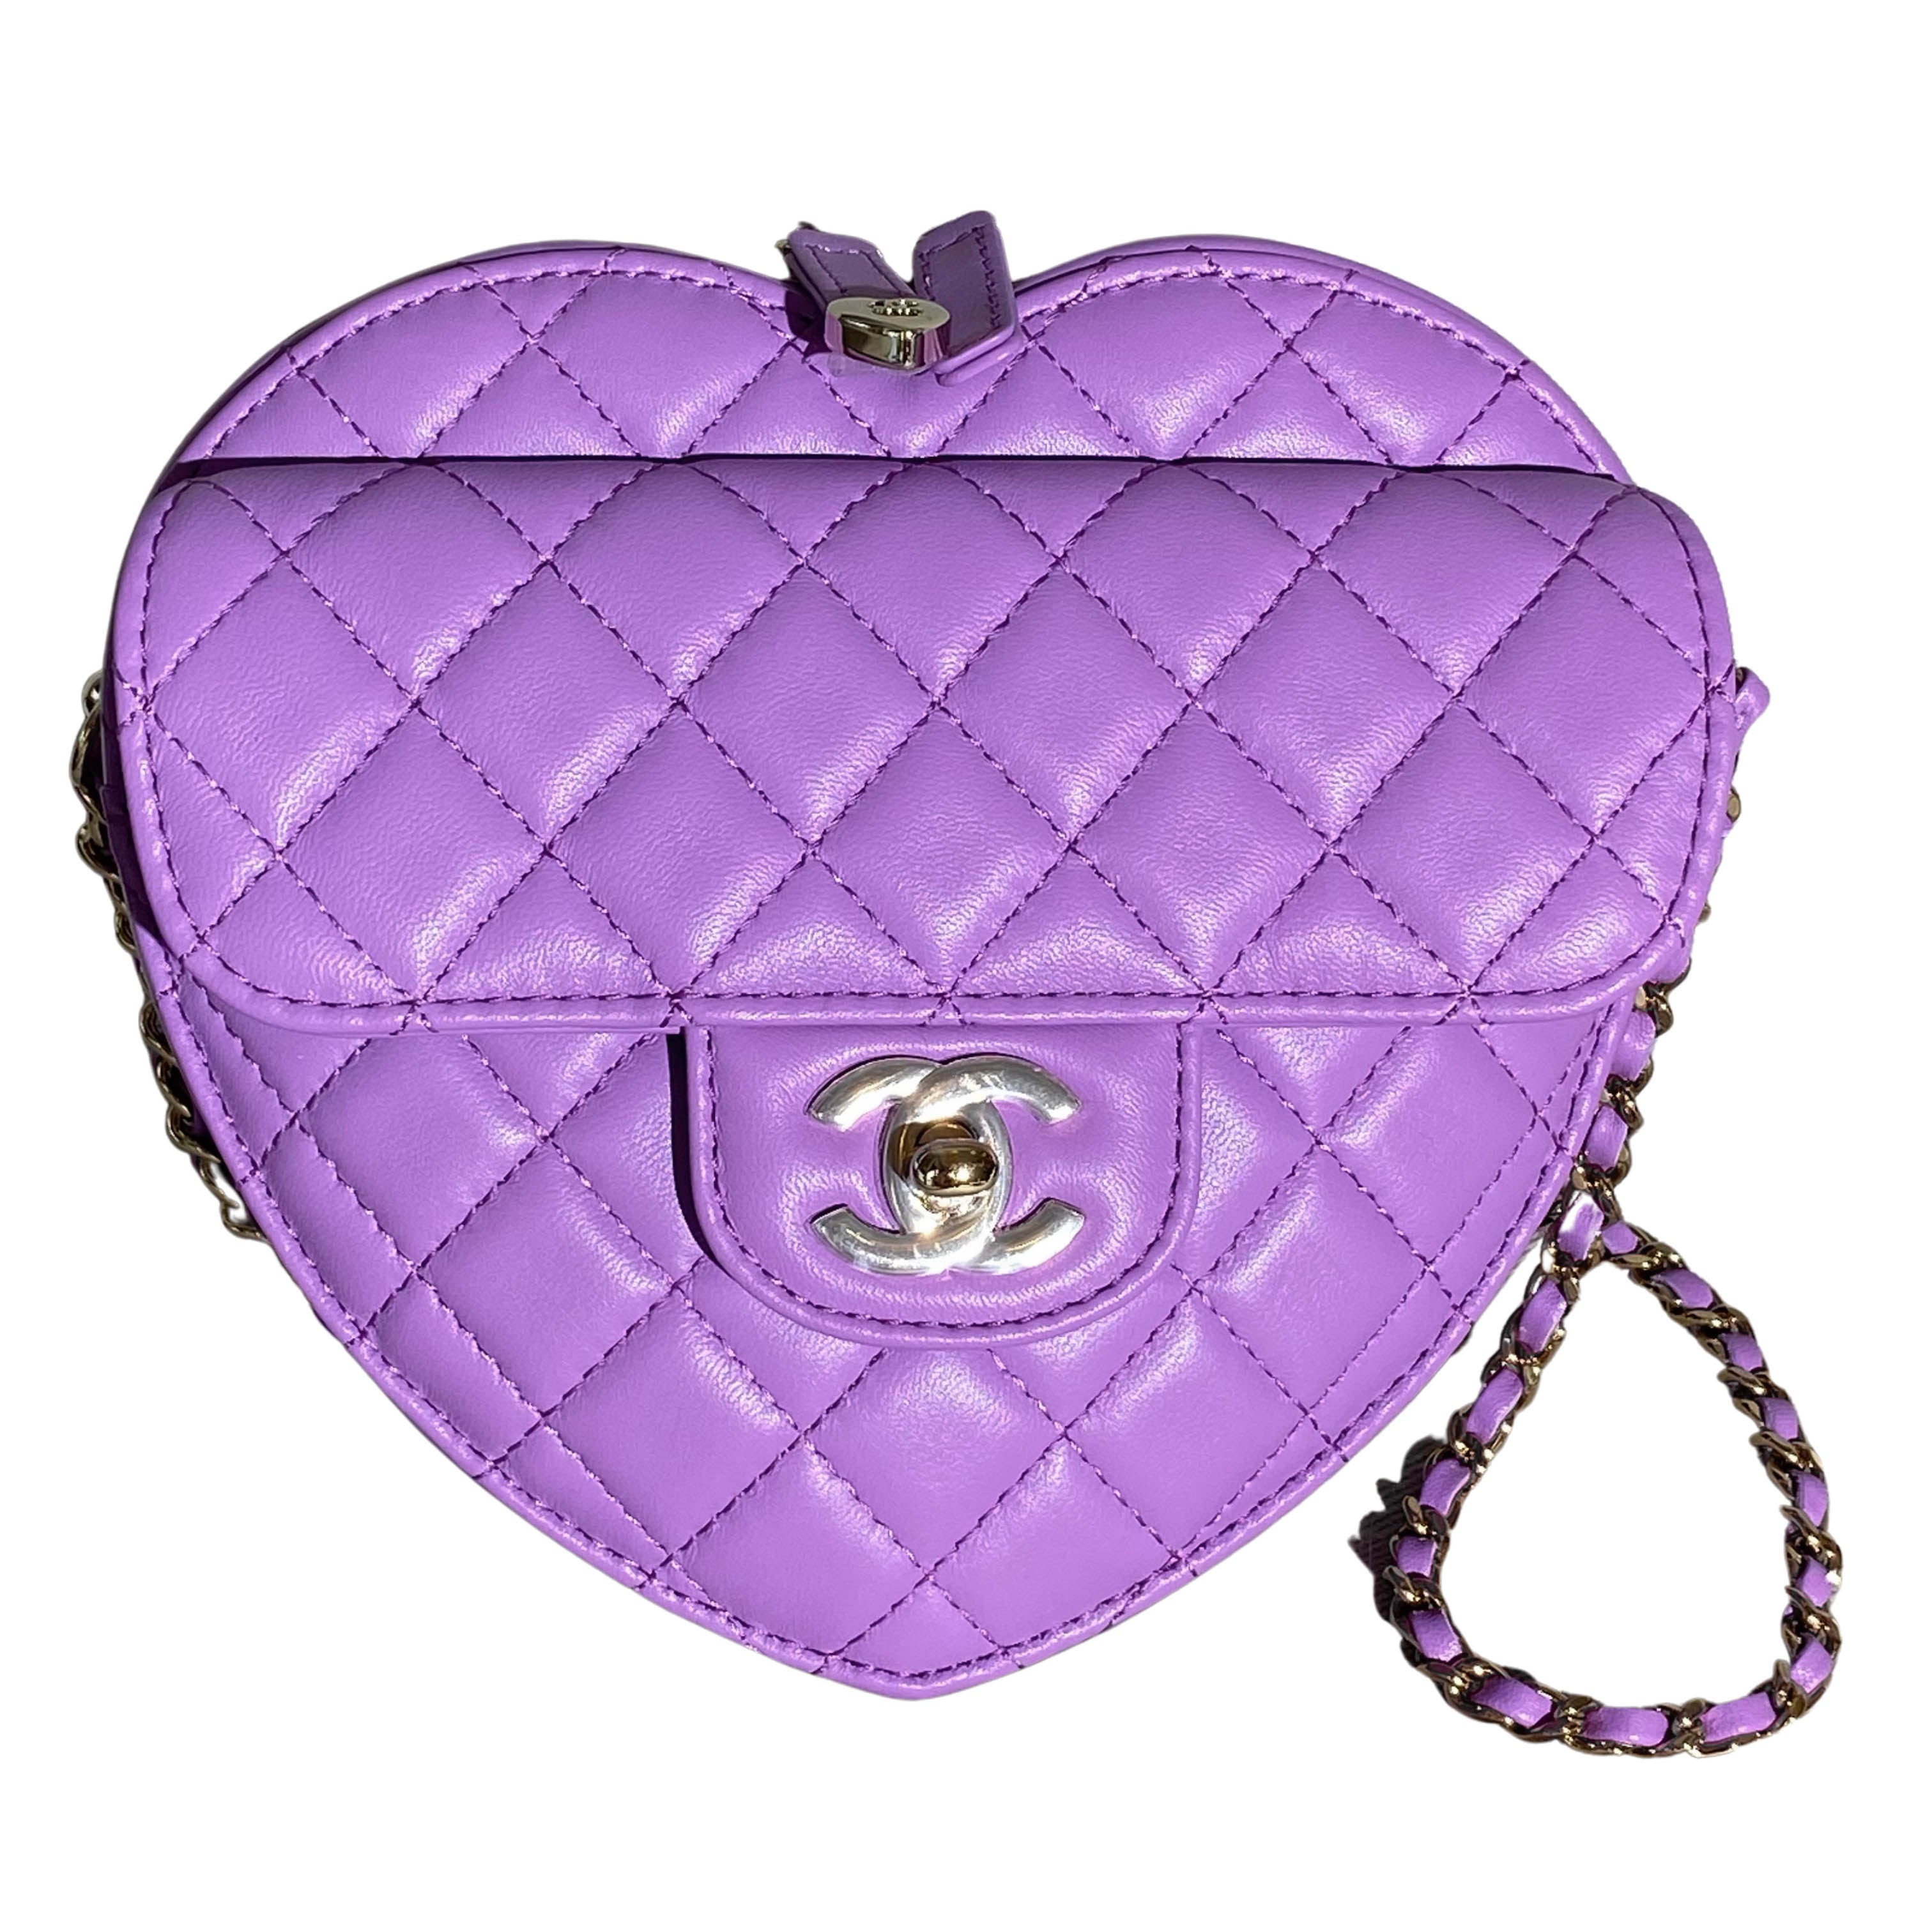 CHANEL 22S Large Heart Bag in Purple Lambskin